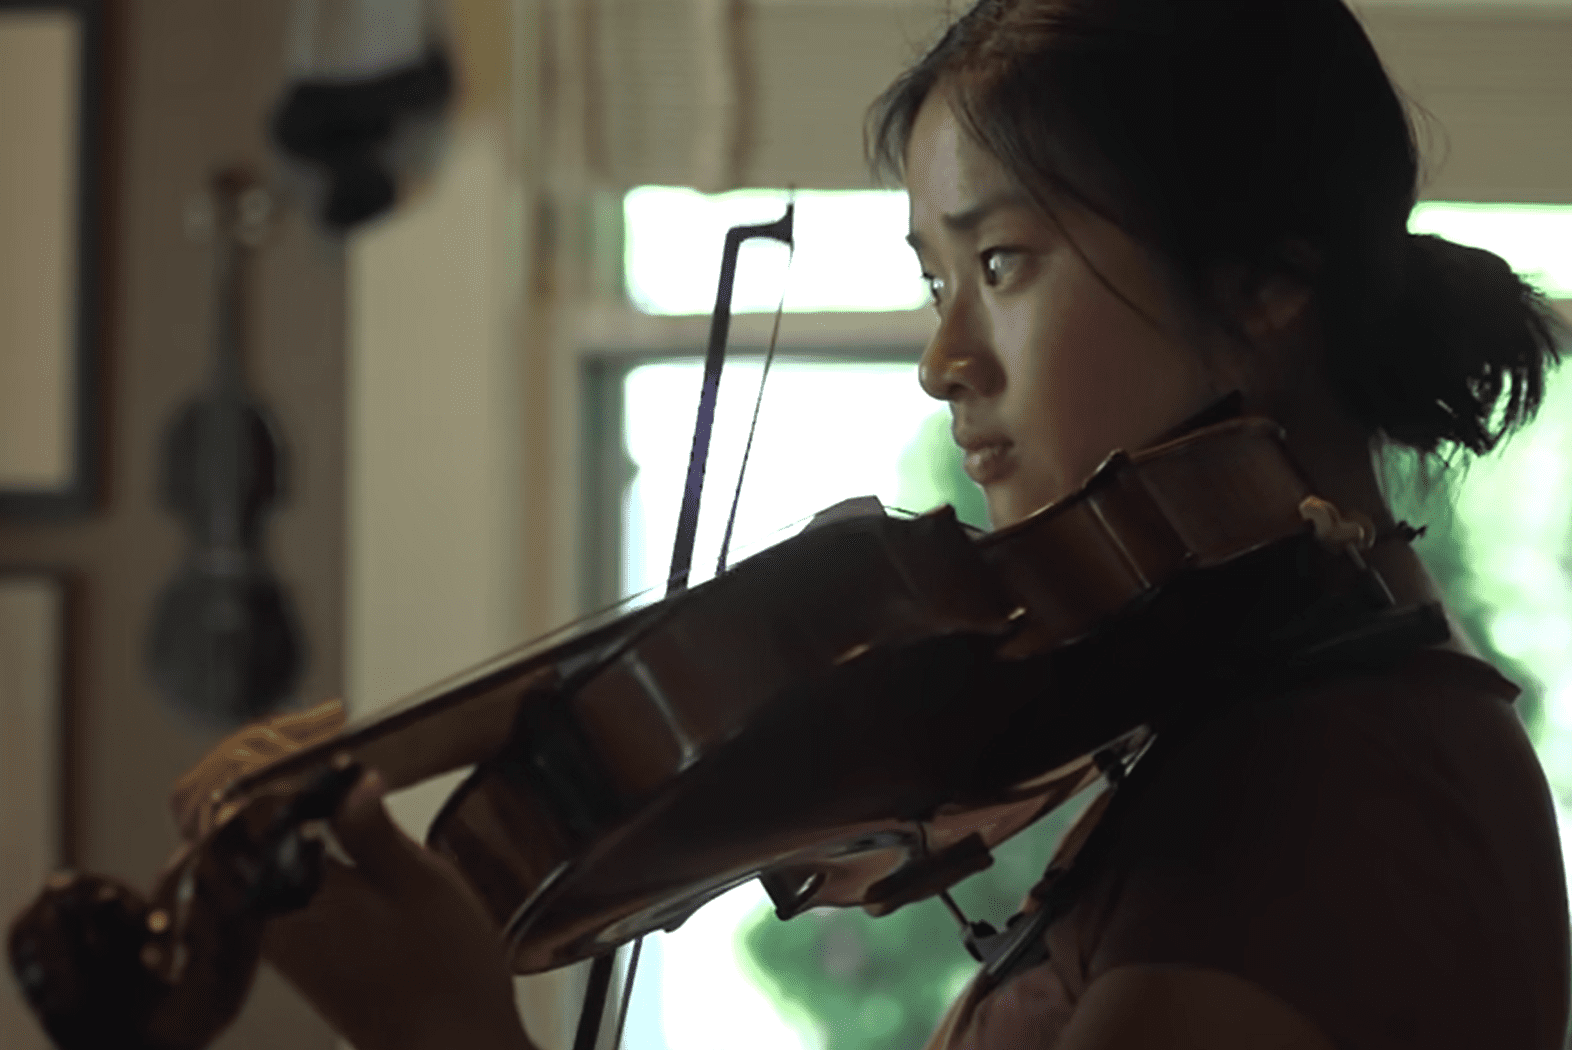  Kati Pohler spielt auf einer Geige. | Quelle: Youtube.com/BBC Stories